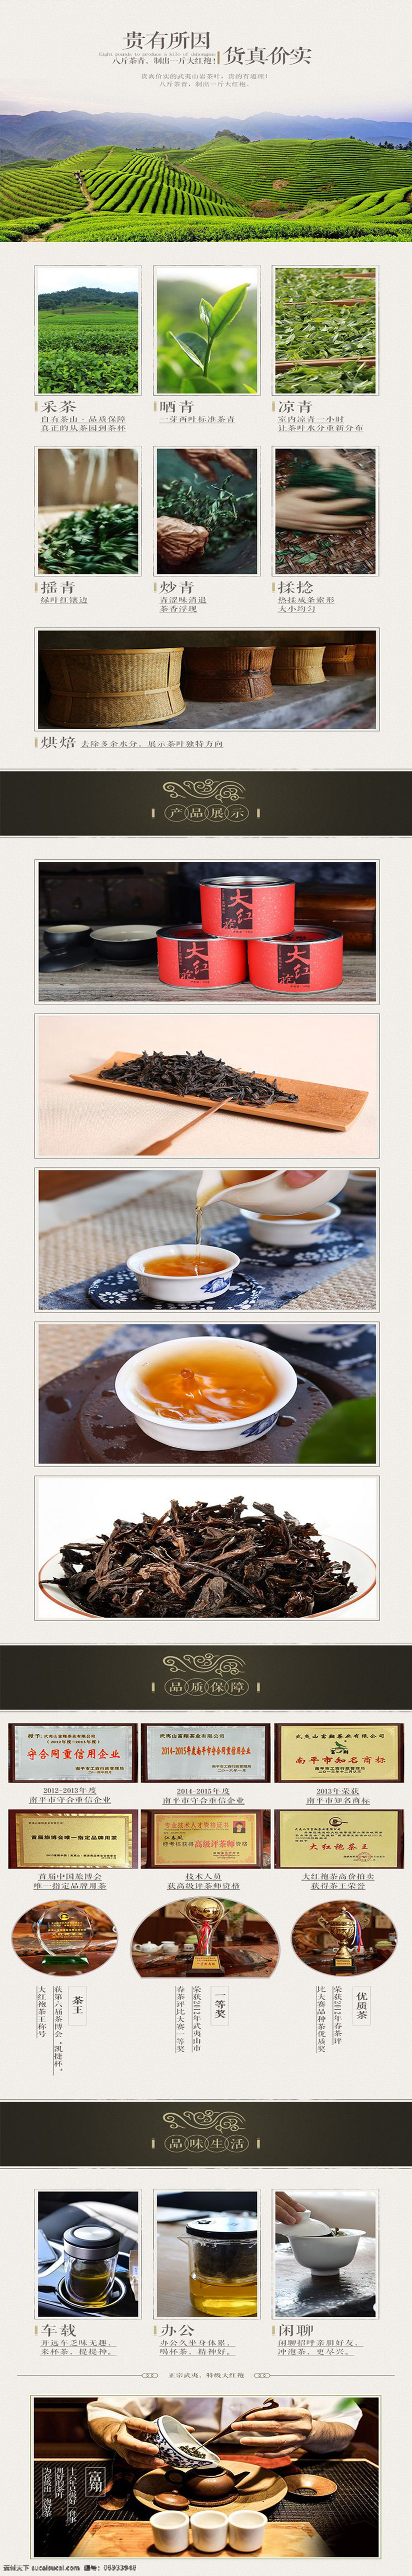 茶叶详情页 茶叶 茶 大红袍 高档茶 传统茶 招贴设计